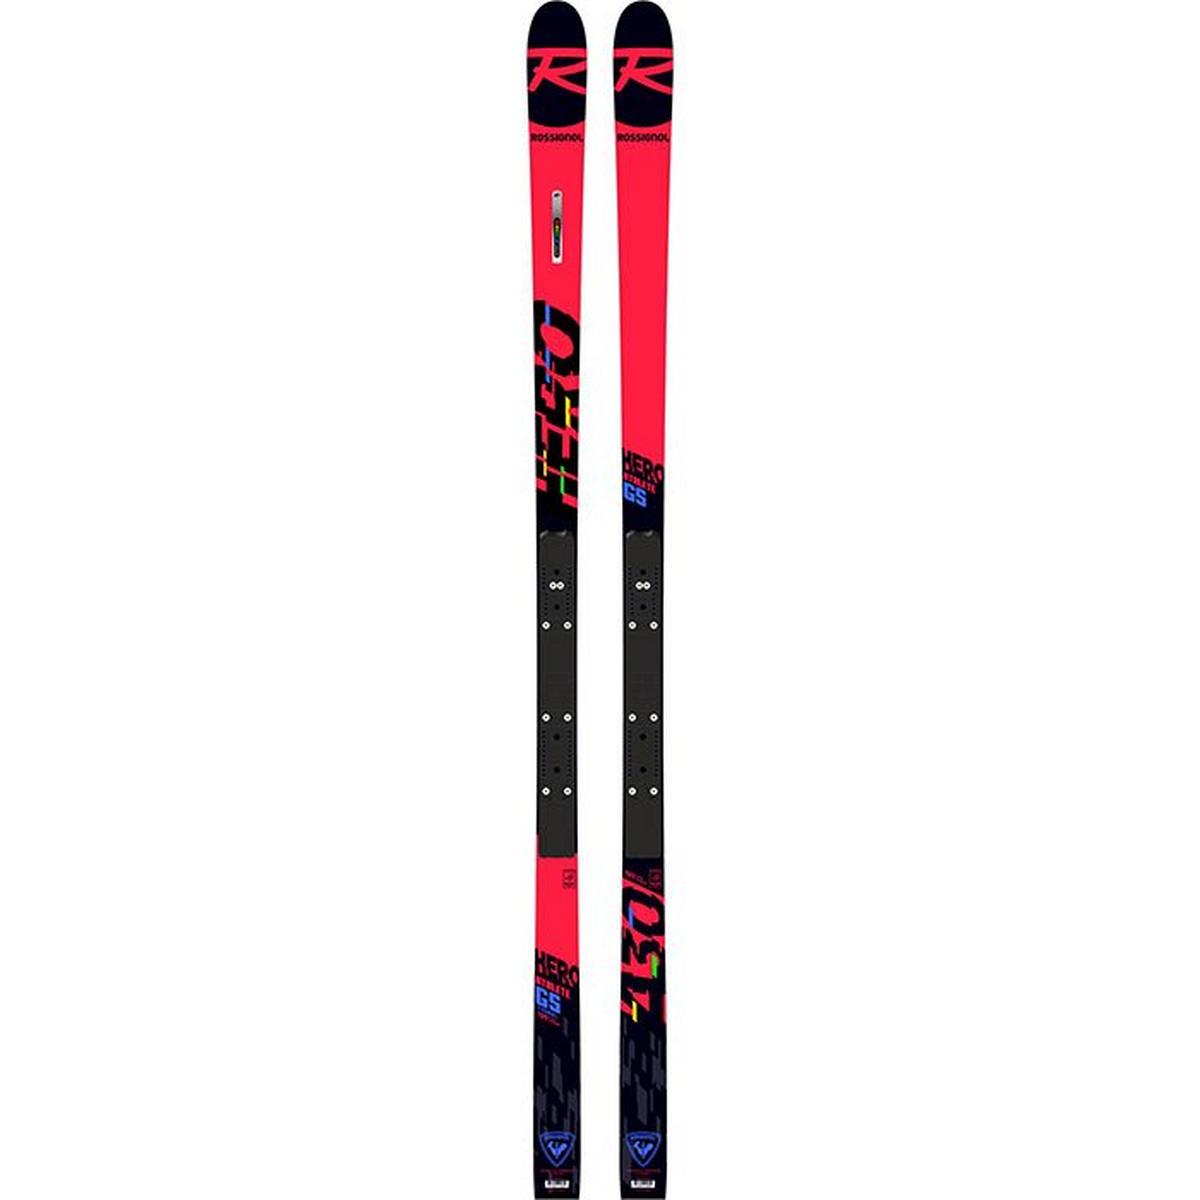 Skis Hero Athlete FIS GS [2021]